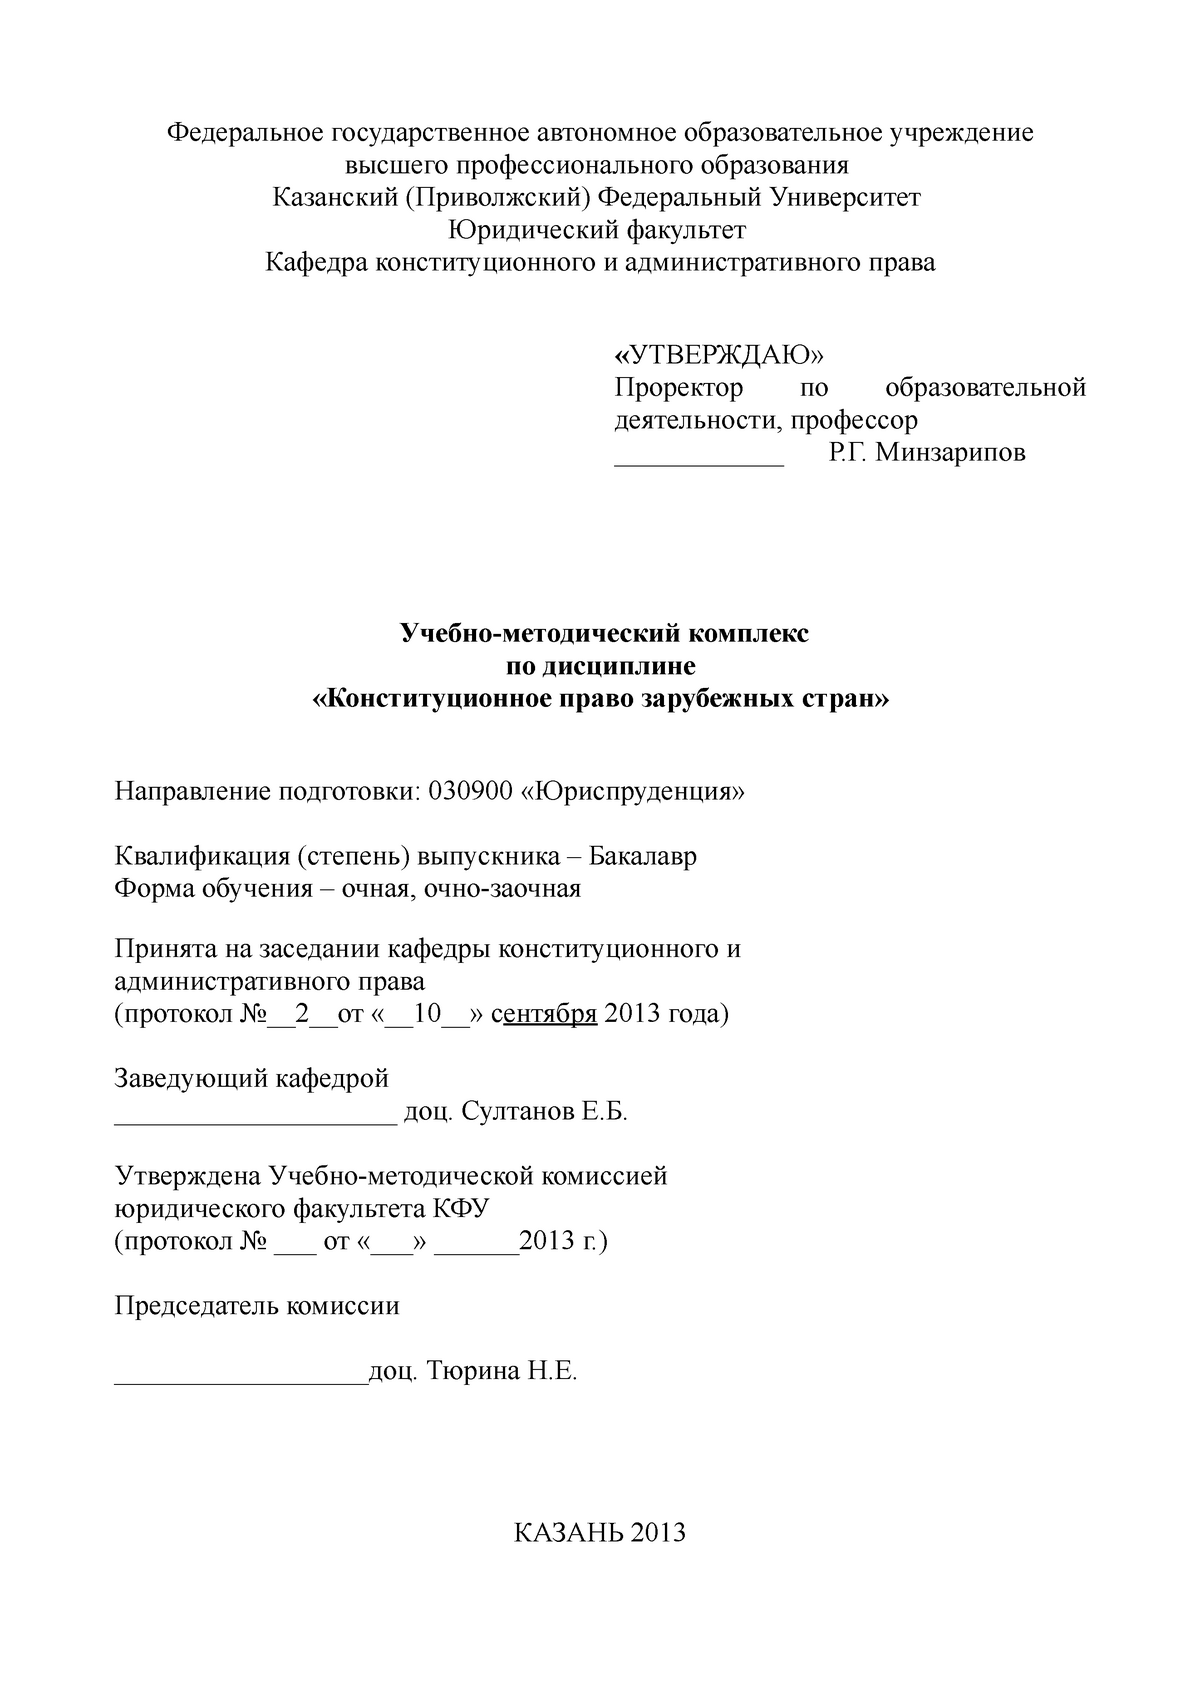 Курсовая работа по теме Отражение политических прав и свобод граждан России в нормативно-правовых актах